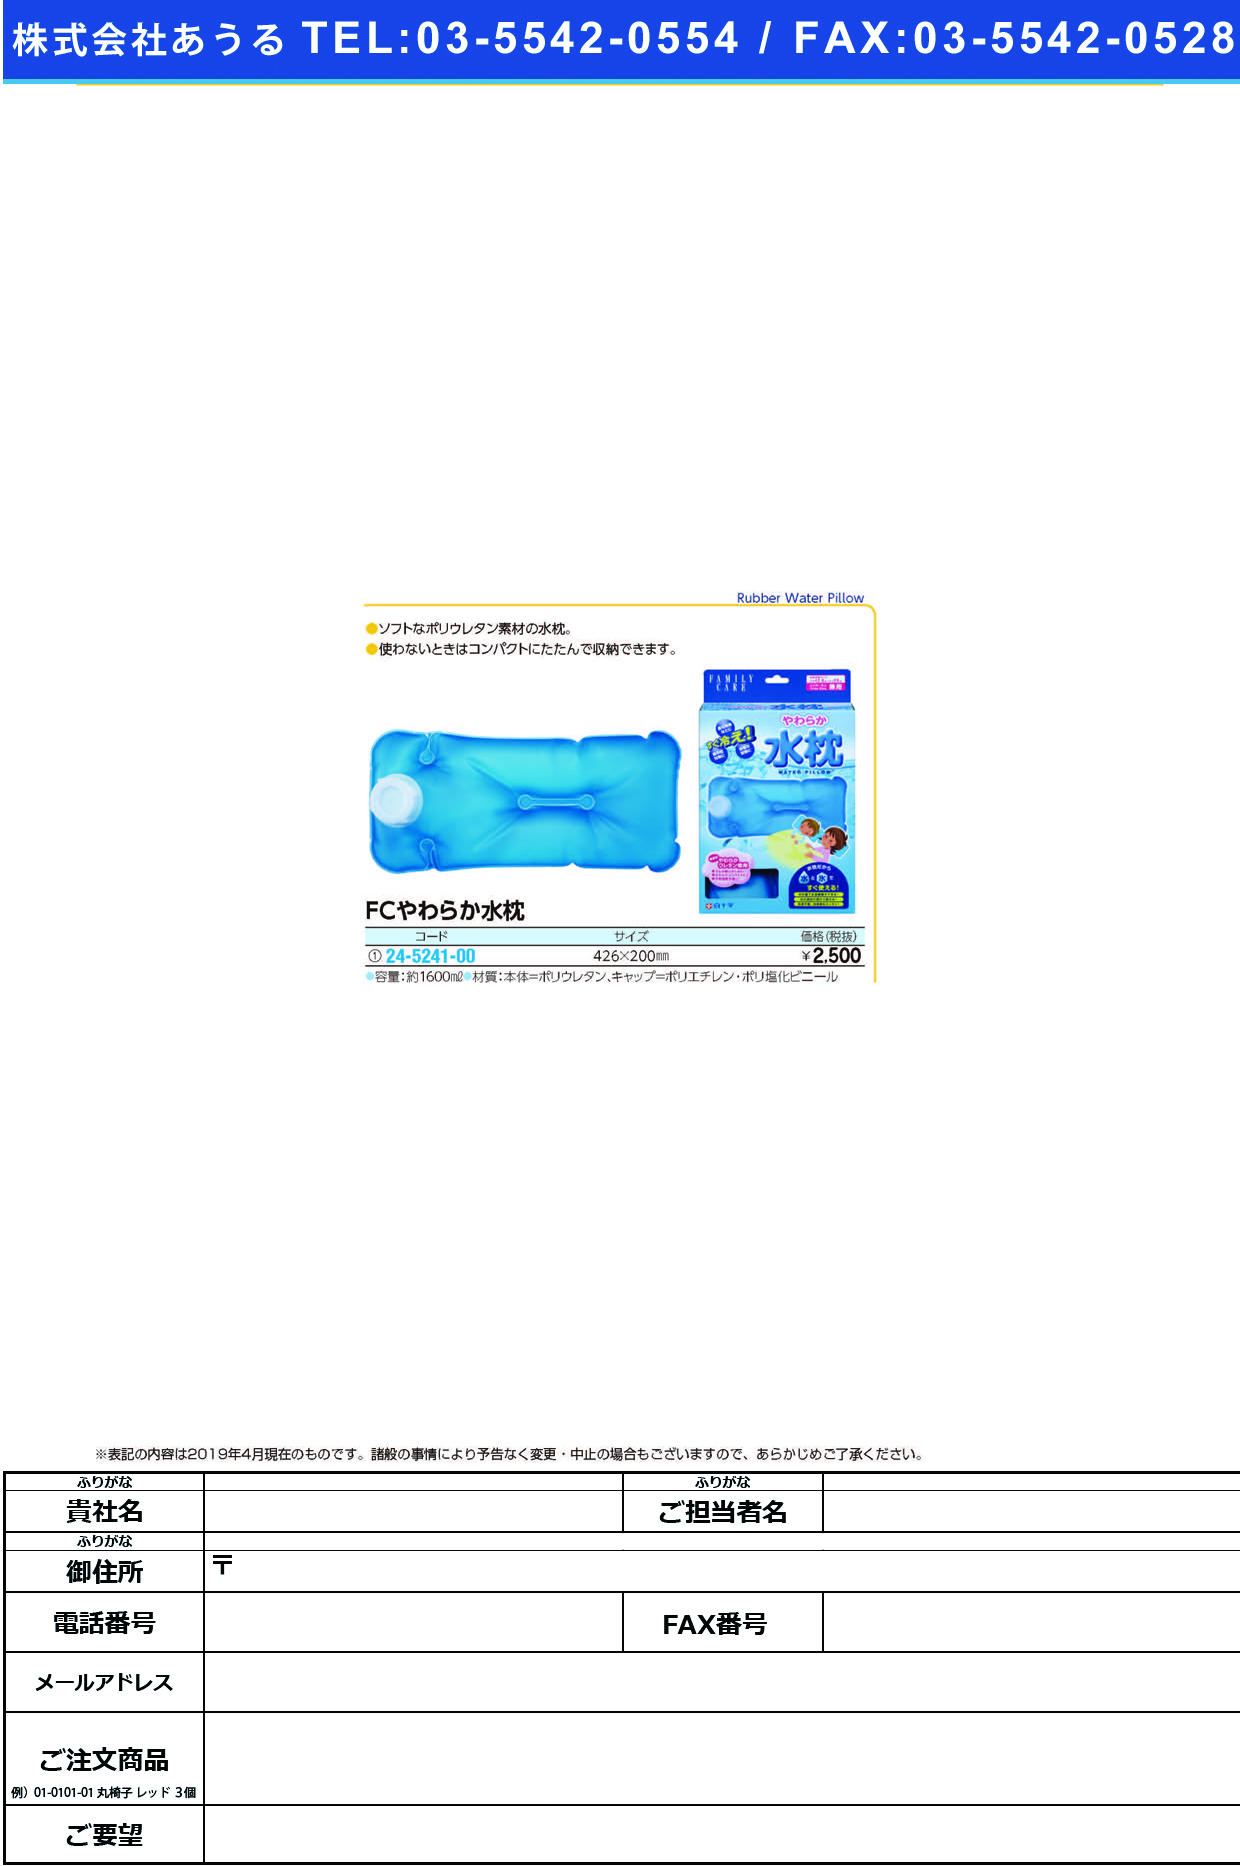 (24-5241-00)ＦＣやわらか水枕（フリーサイズ） 46291 FCﾔﾜﾗｶﾐｽﾞﾏｸﾗﾌﾘｰｻｲｽﾞ(白十字)【1個単位】【2019年カタログ商品】